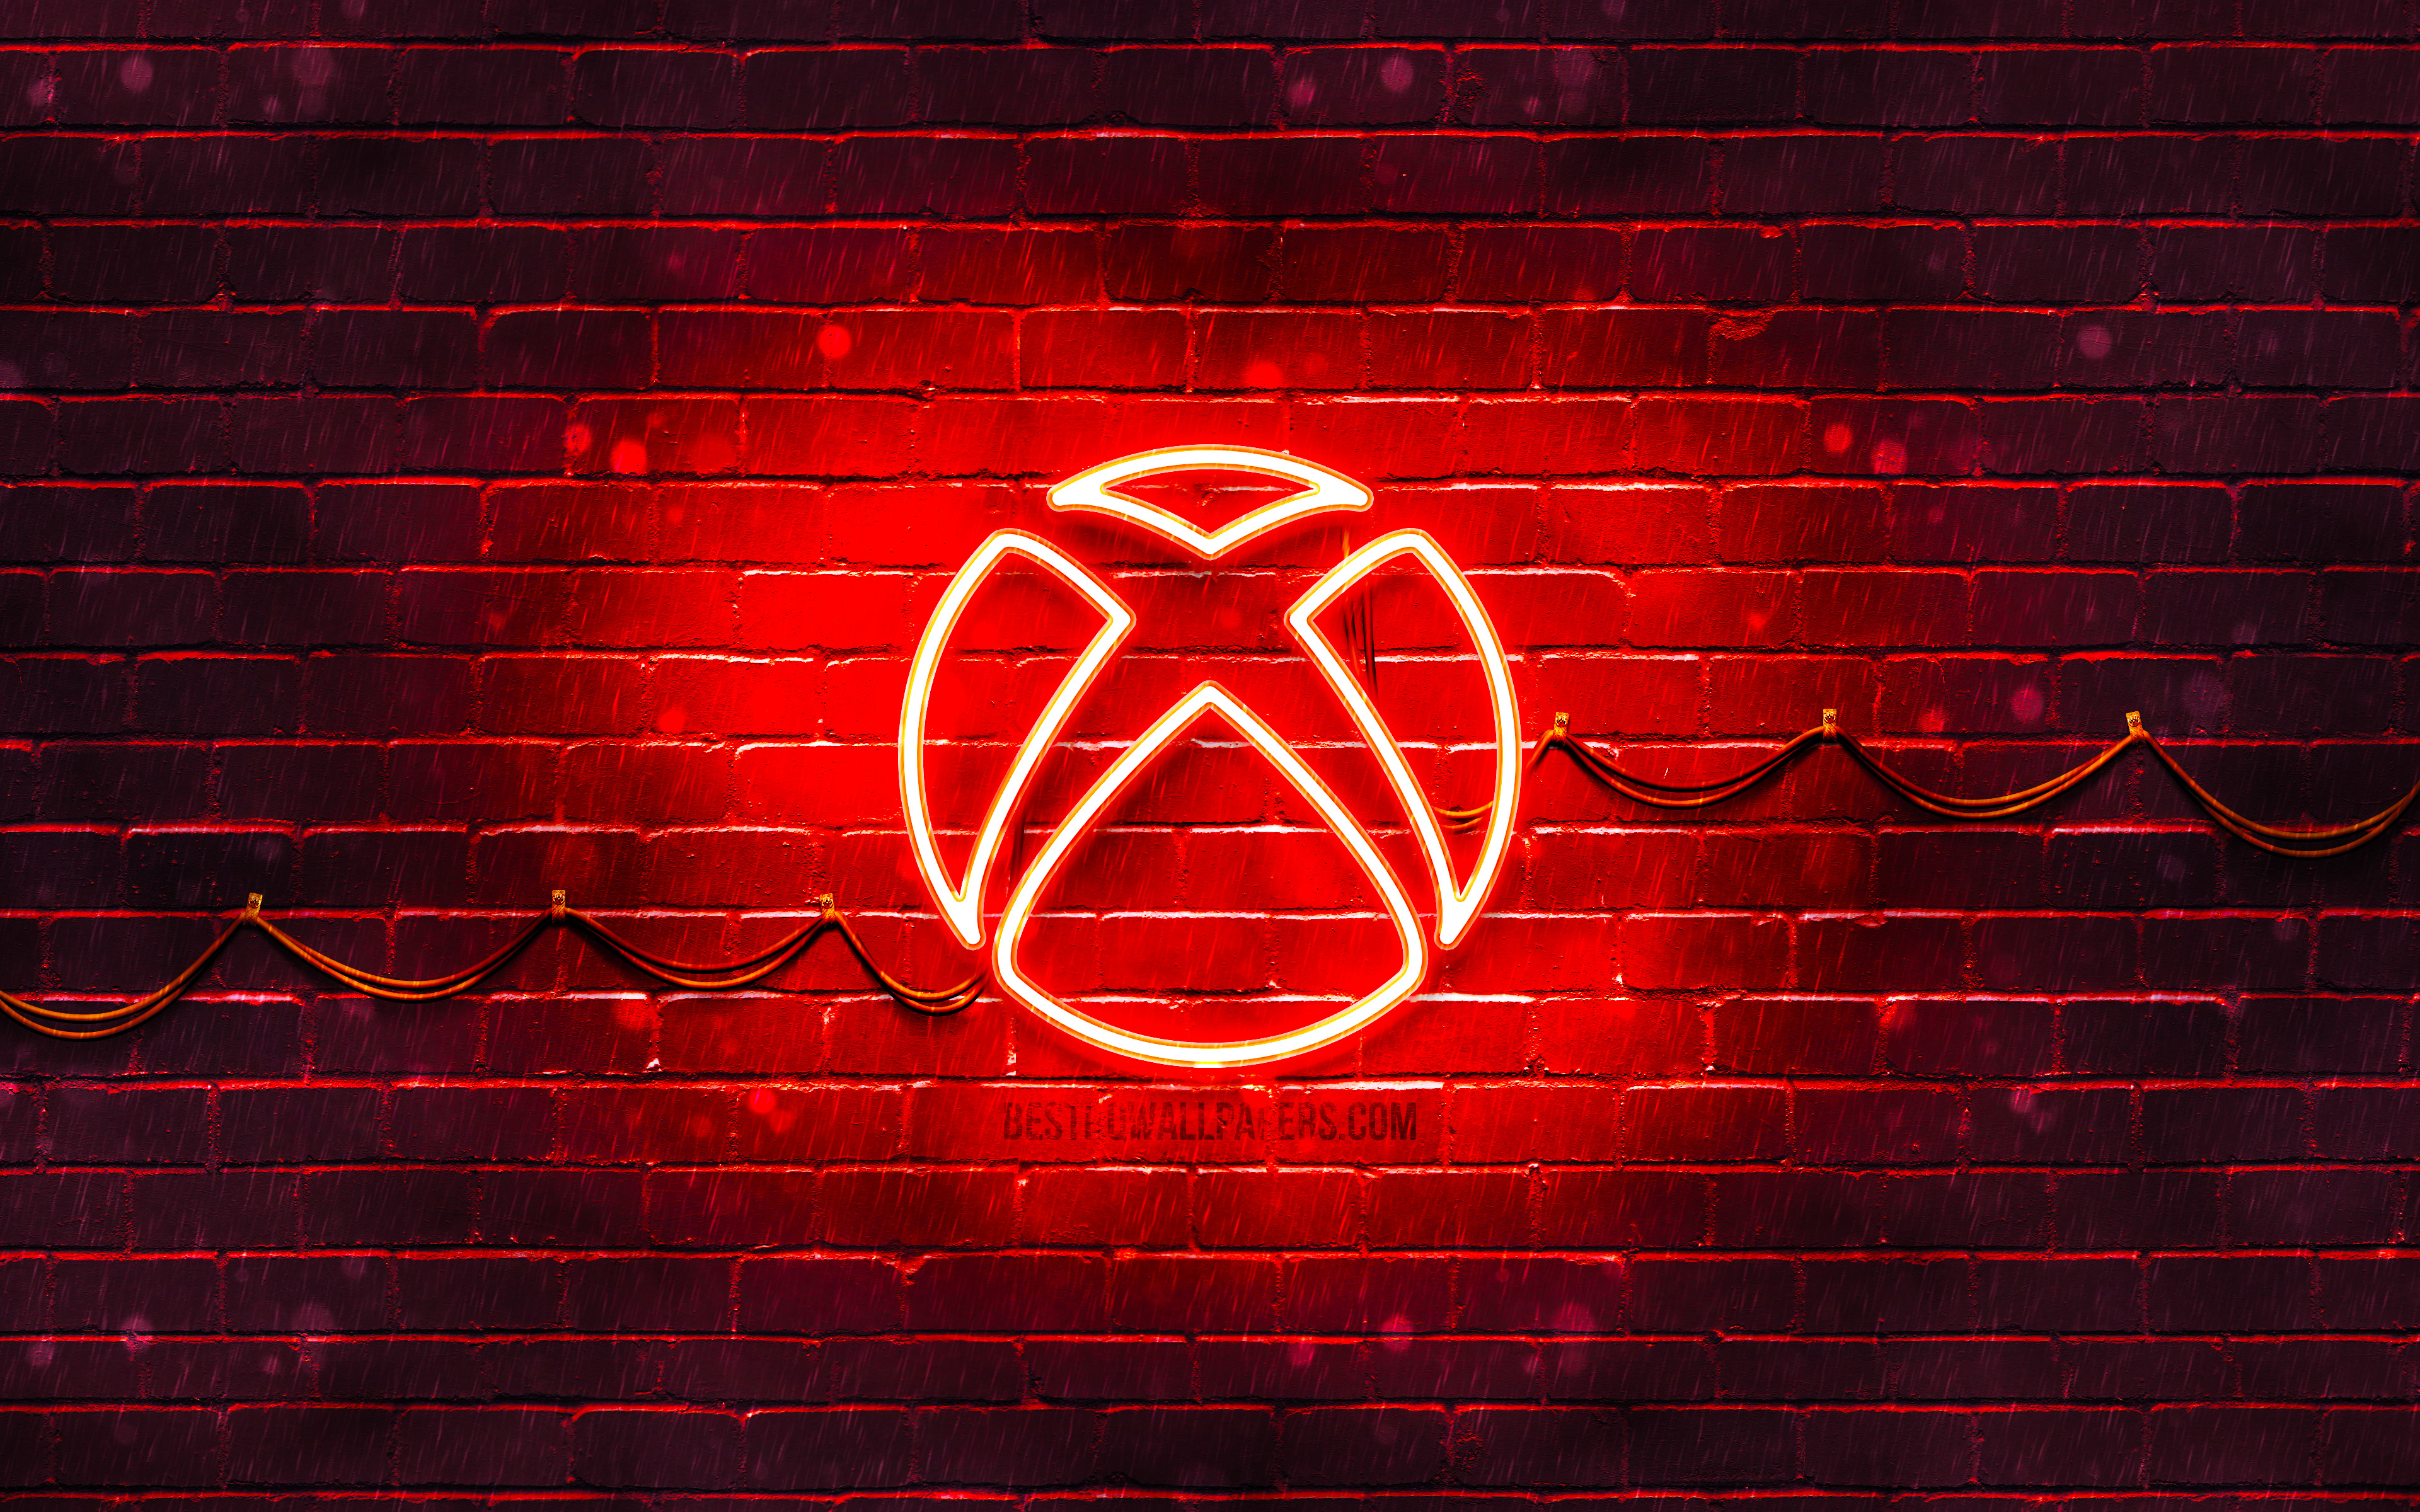 Descargar fondos de pantalla Xbox logotipo rojo, 4k, rojo brickwall